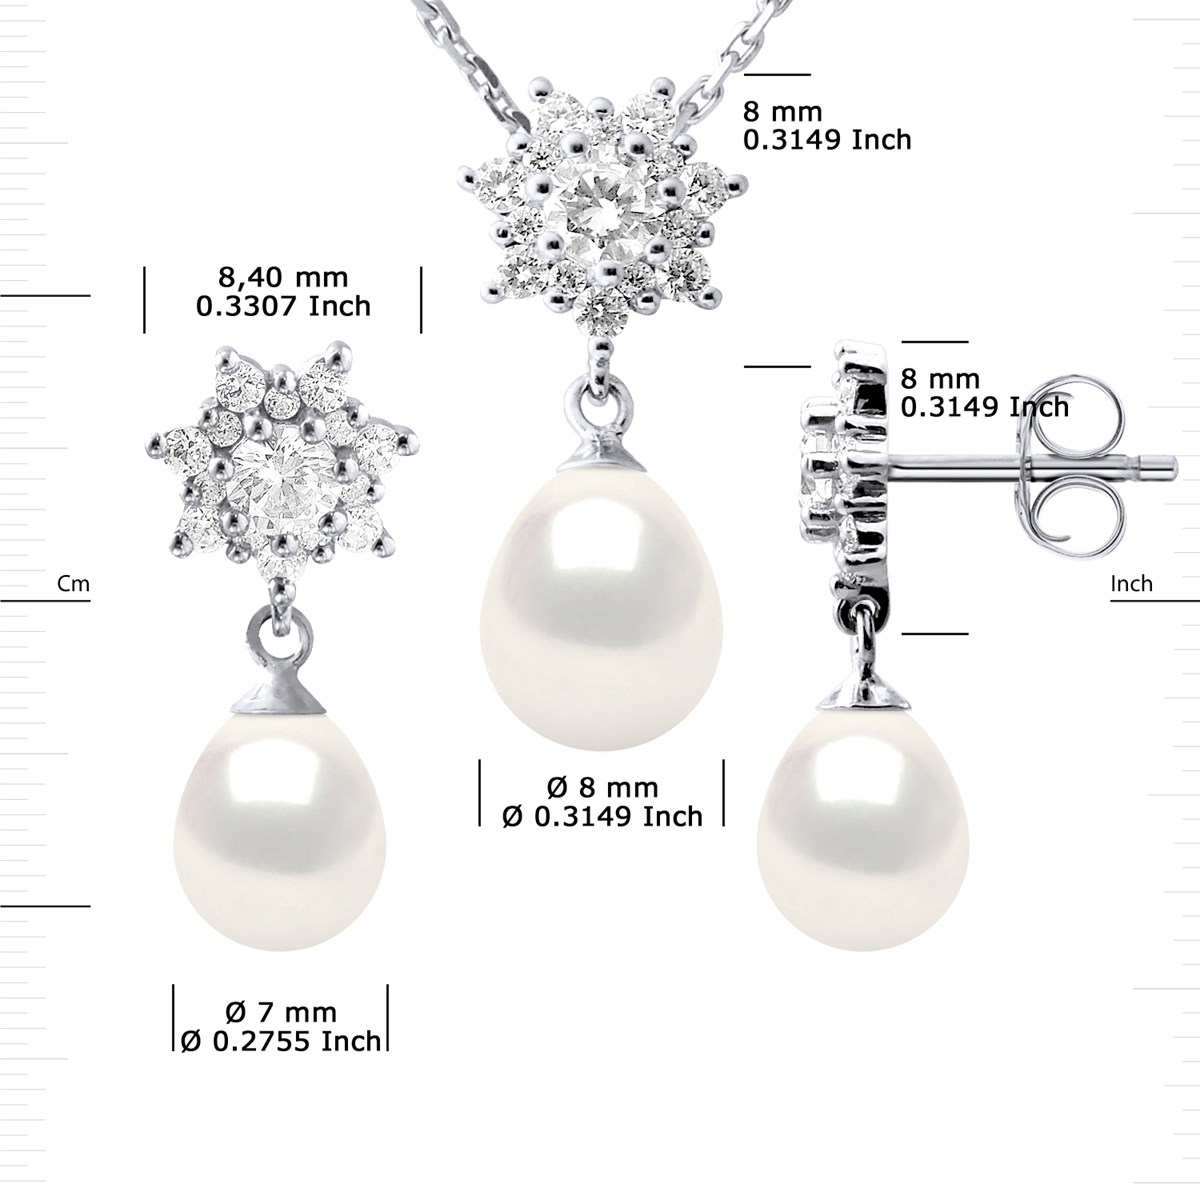 Parure BIARRITZ Collier & Boucles d'Oreilles Pendantes Perles d'Eau Douce Blanches Argent 925 - vue 3